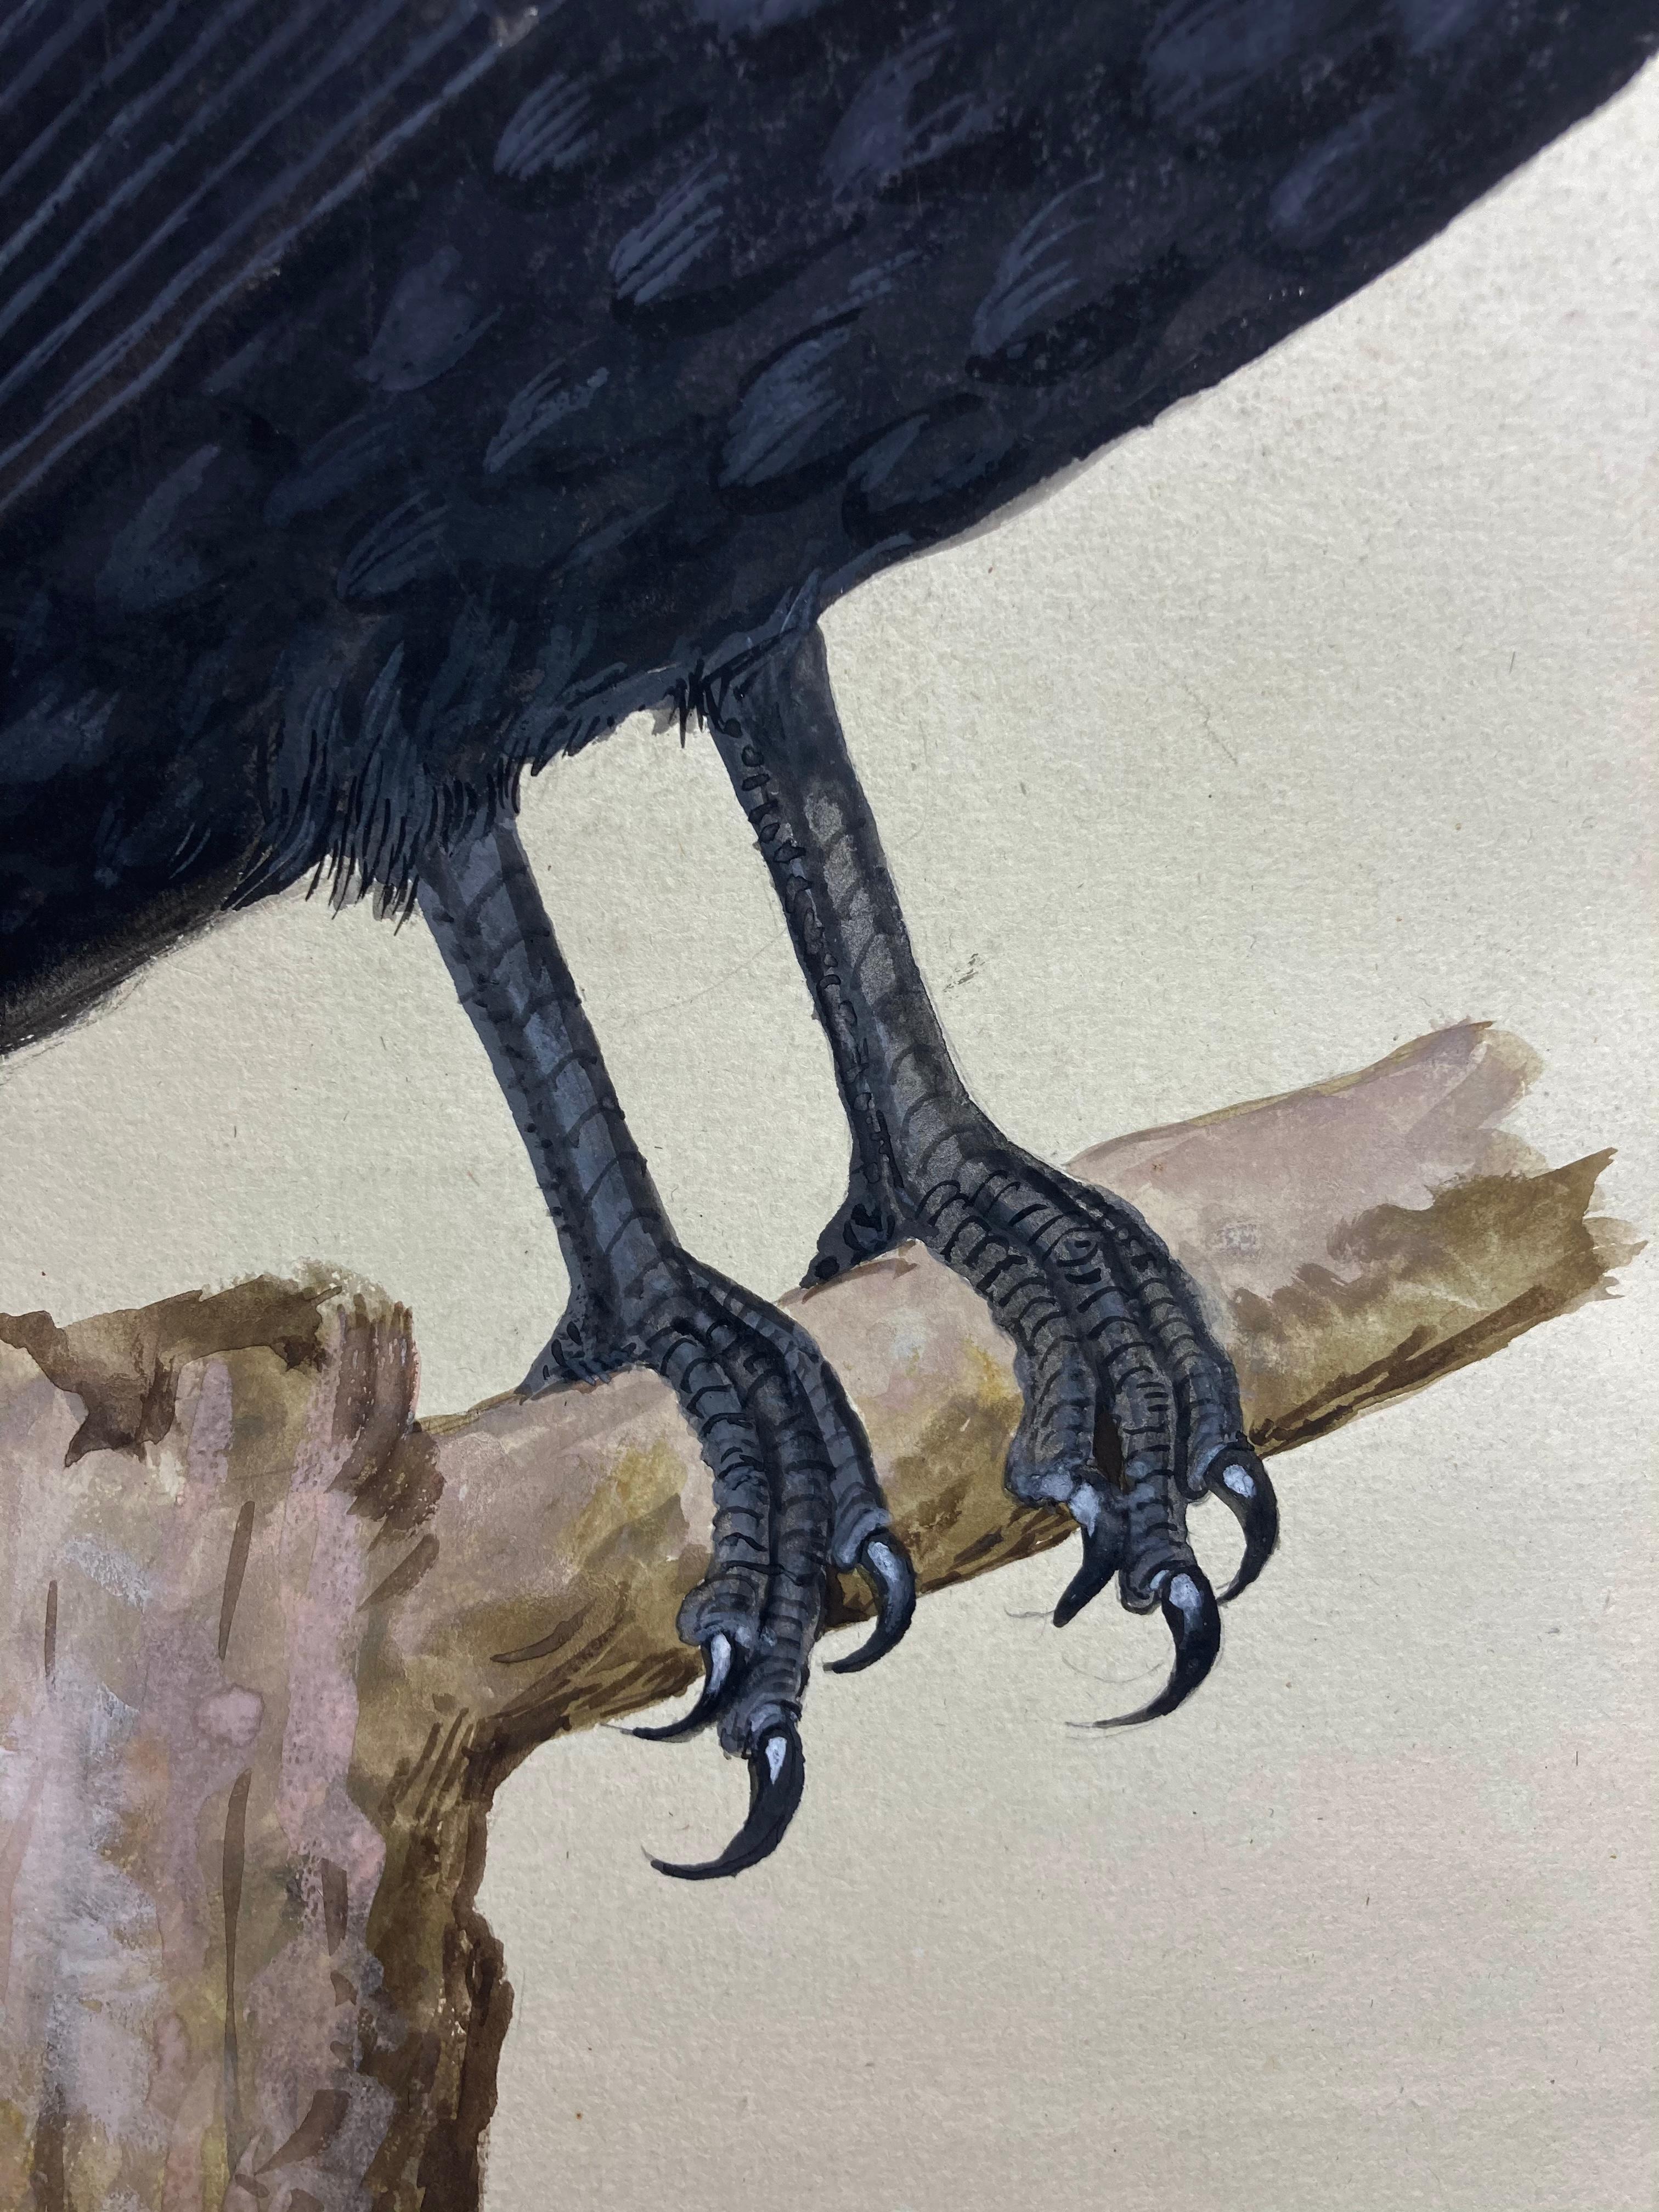 Dessin animalier d'un Crow assis en noir par un peintre britannique éclairé. - Réalisme Art par Peter Paillou